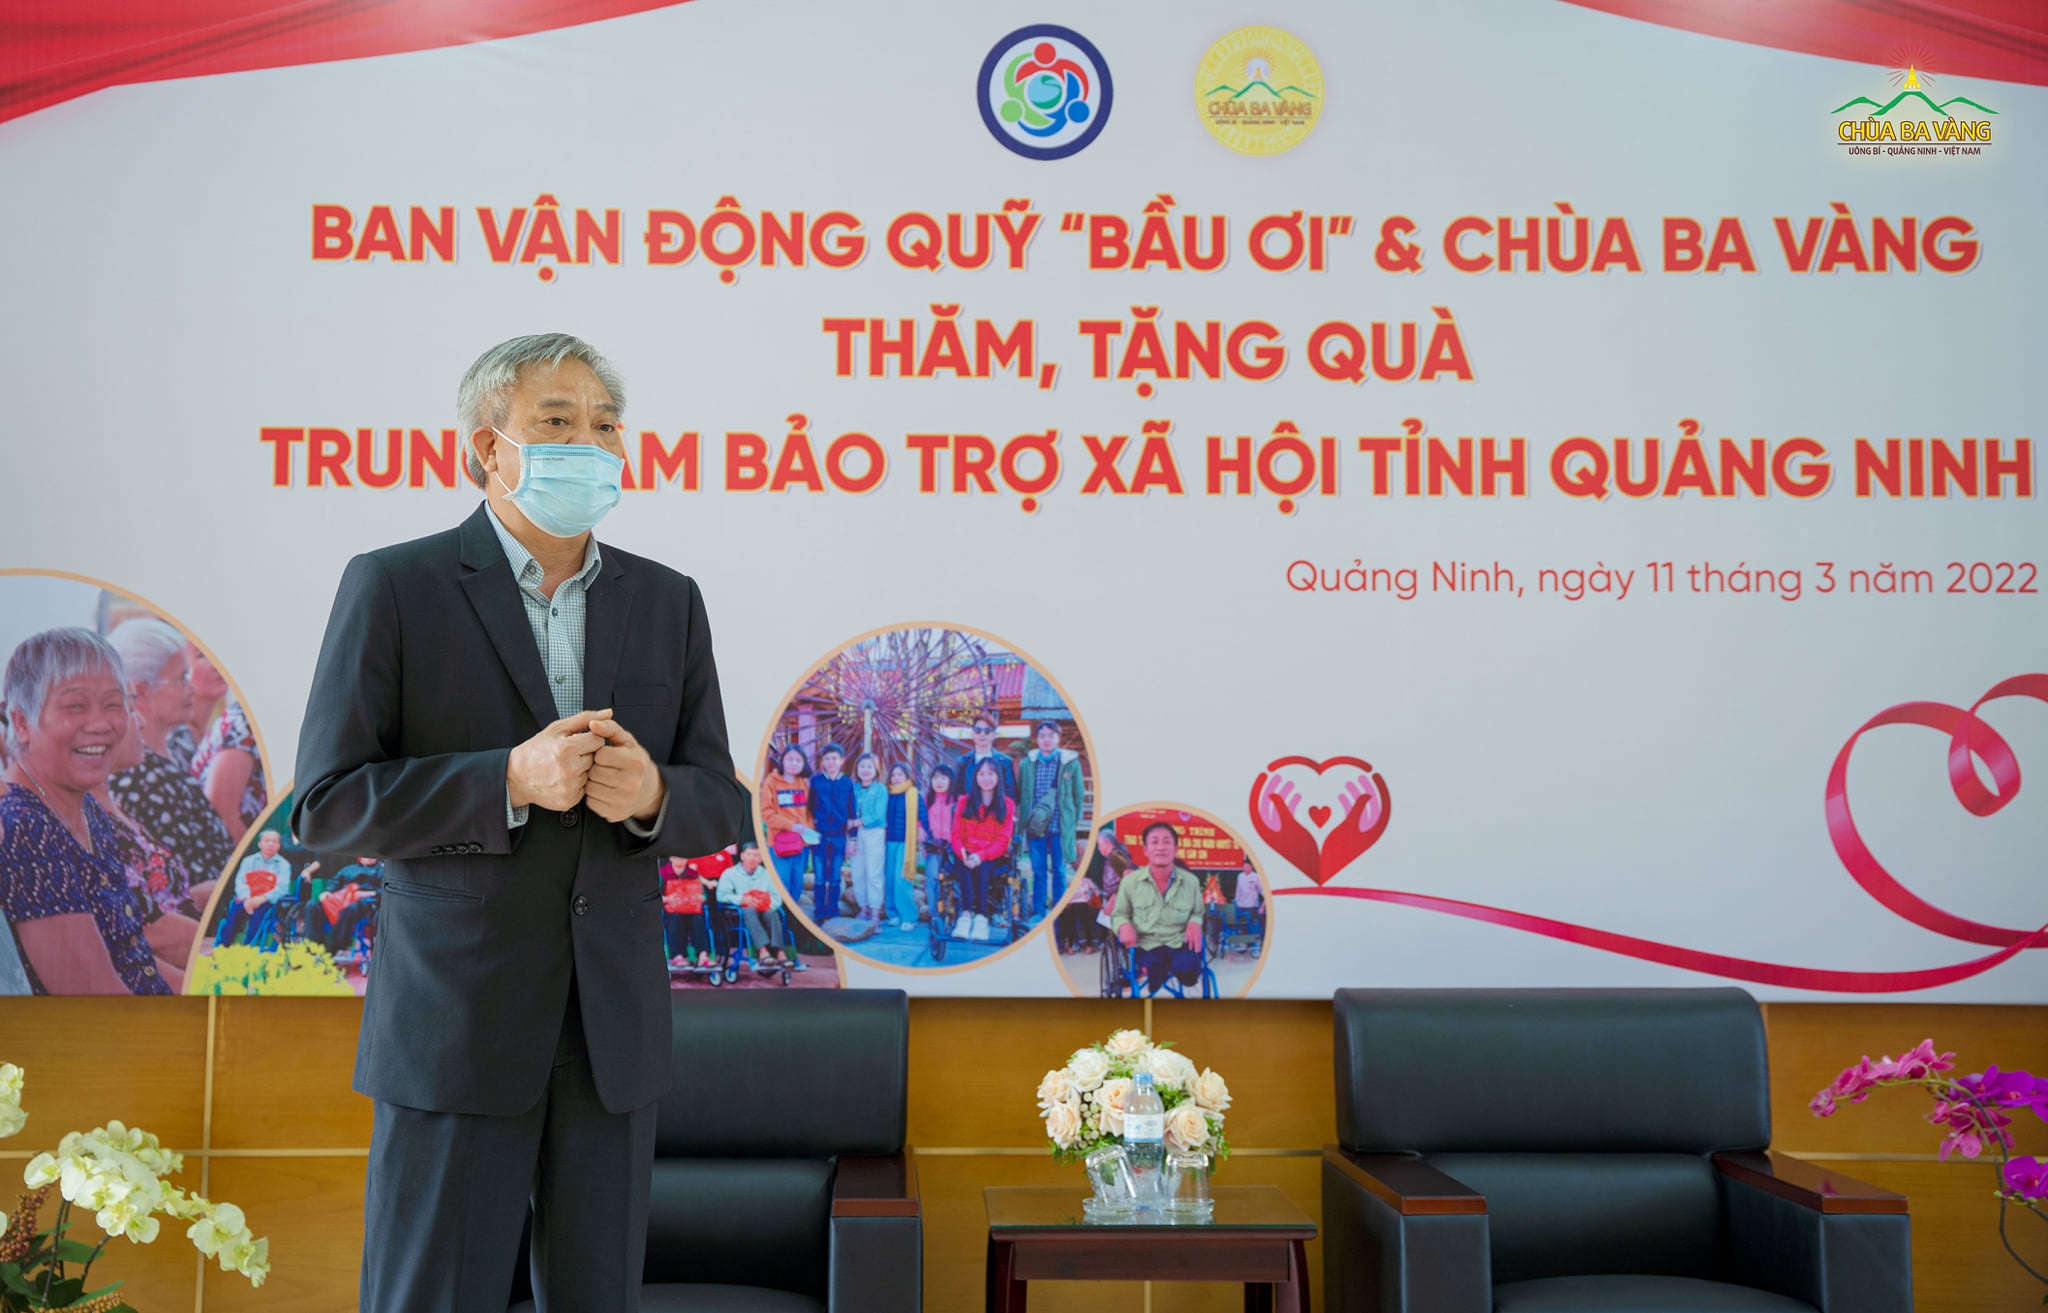 Ông Lê Minh Sơn - Phó Giám đốc Sở Lao động Thương binh và Xã hội tỉnh Quảng Ninh gửi lời cảm ơn tới chùa Ba Vàng cùng quỹ “Bầu ơi”